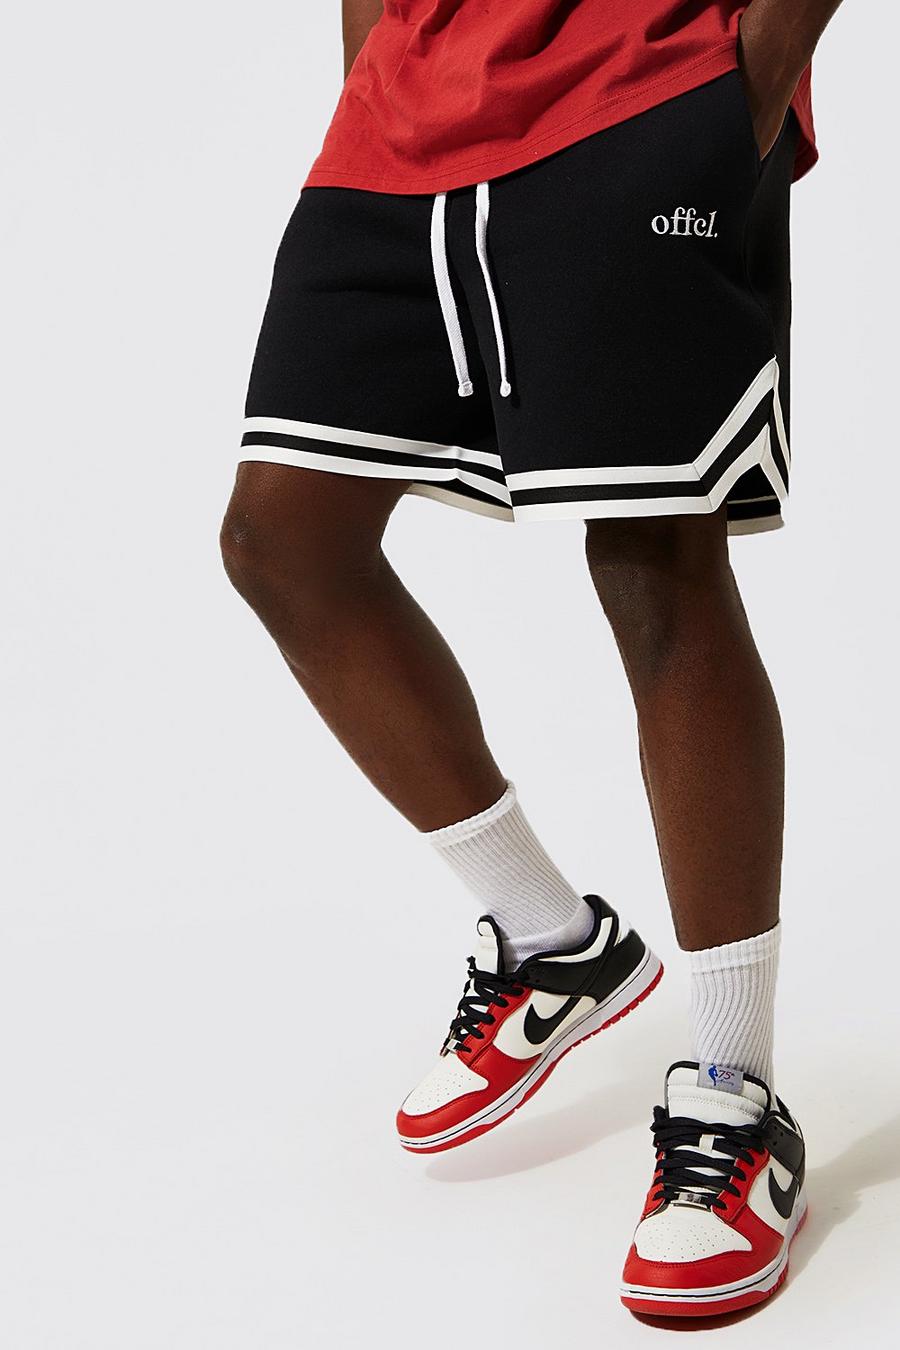 Pantaloncini corti da basket Offcl con strisce laterali, Black nero